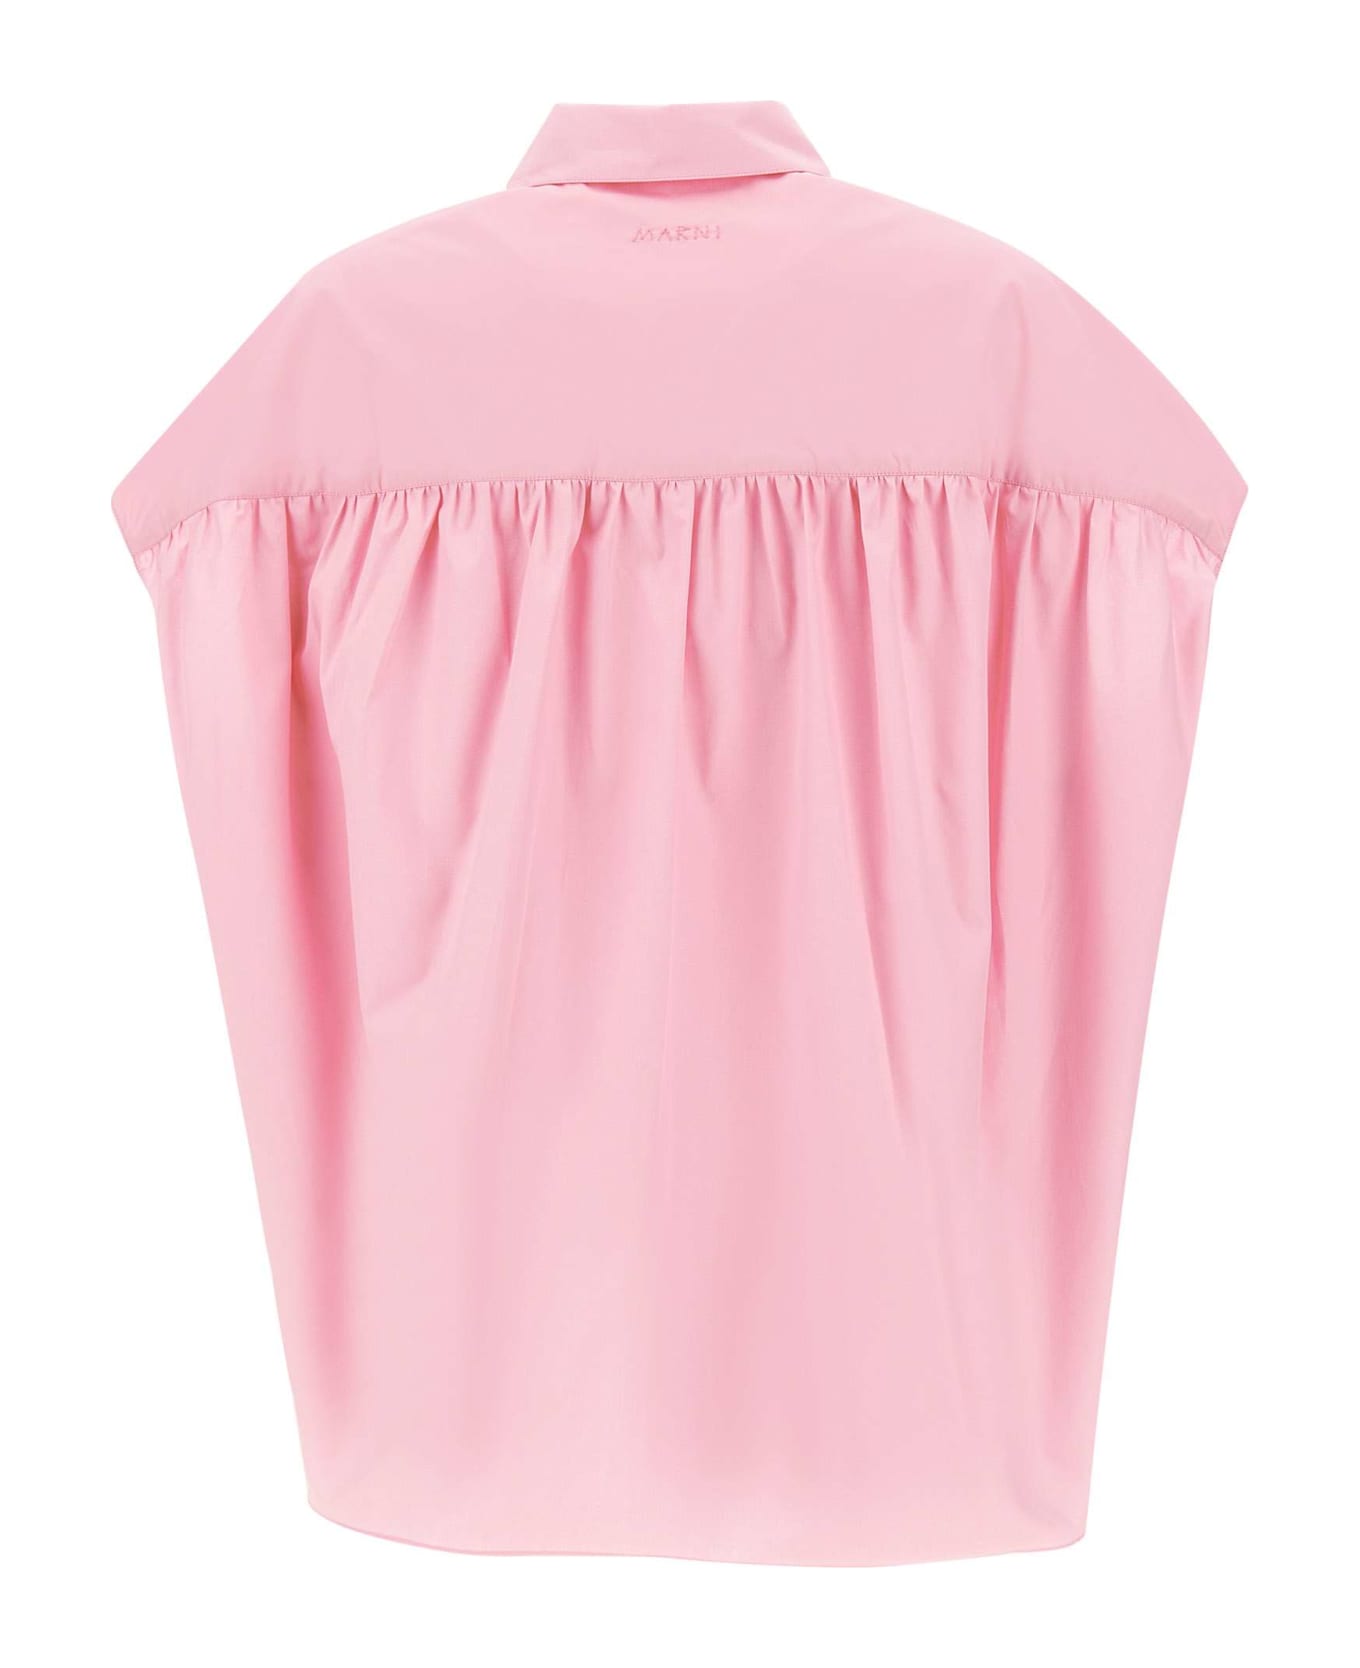 Marni Organic Cotton Poplin Shirt - PINK